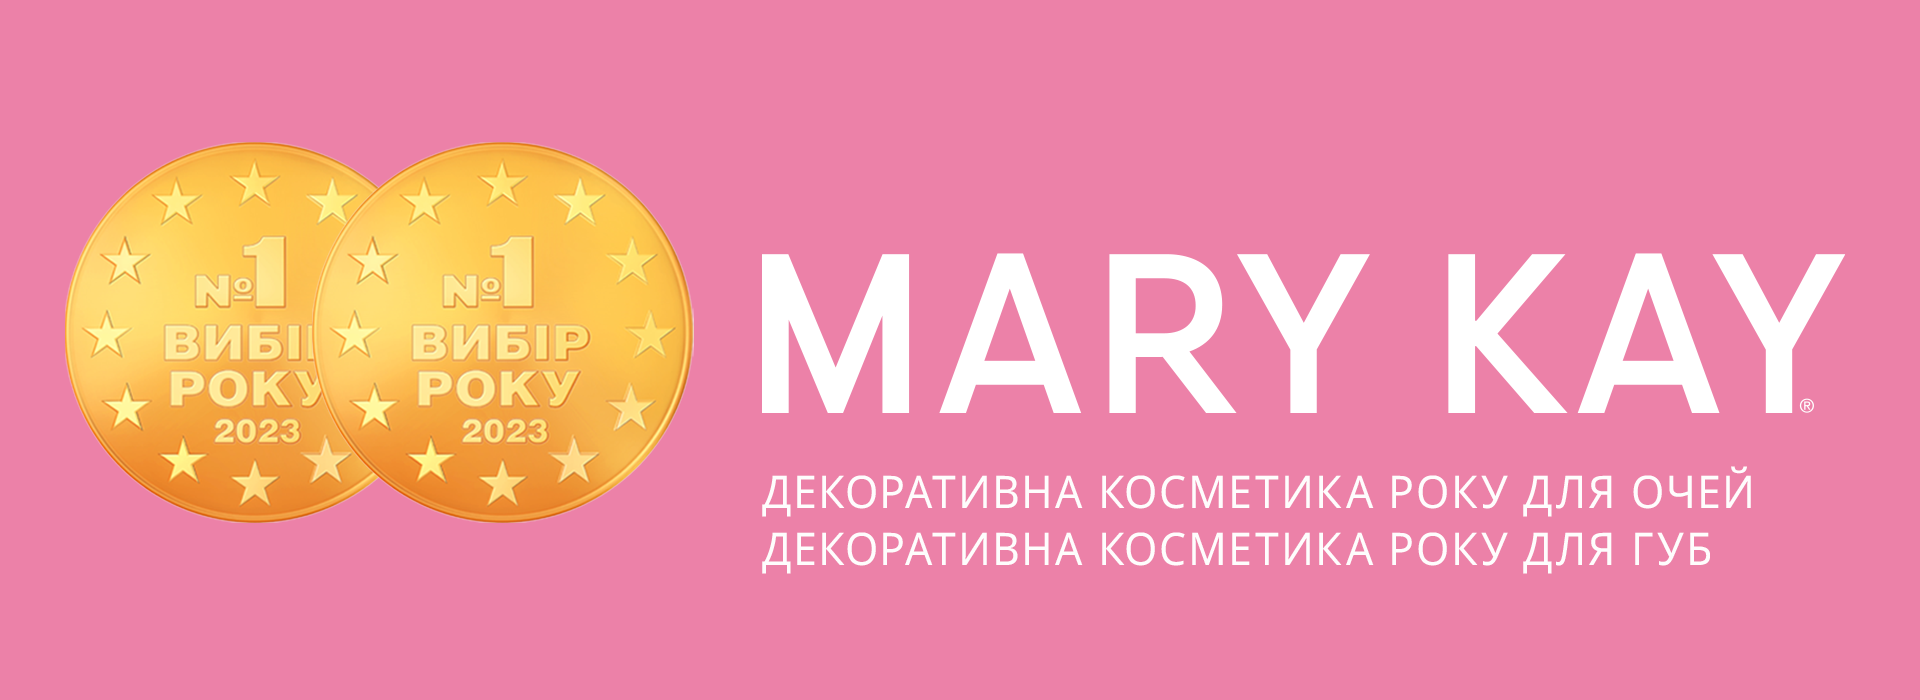 logotipo de mary kay 2023